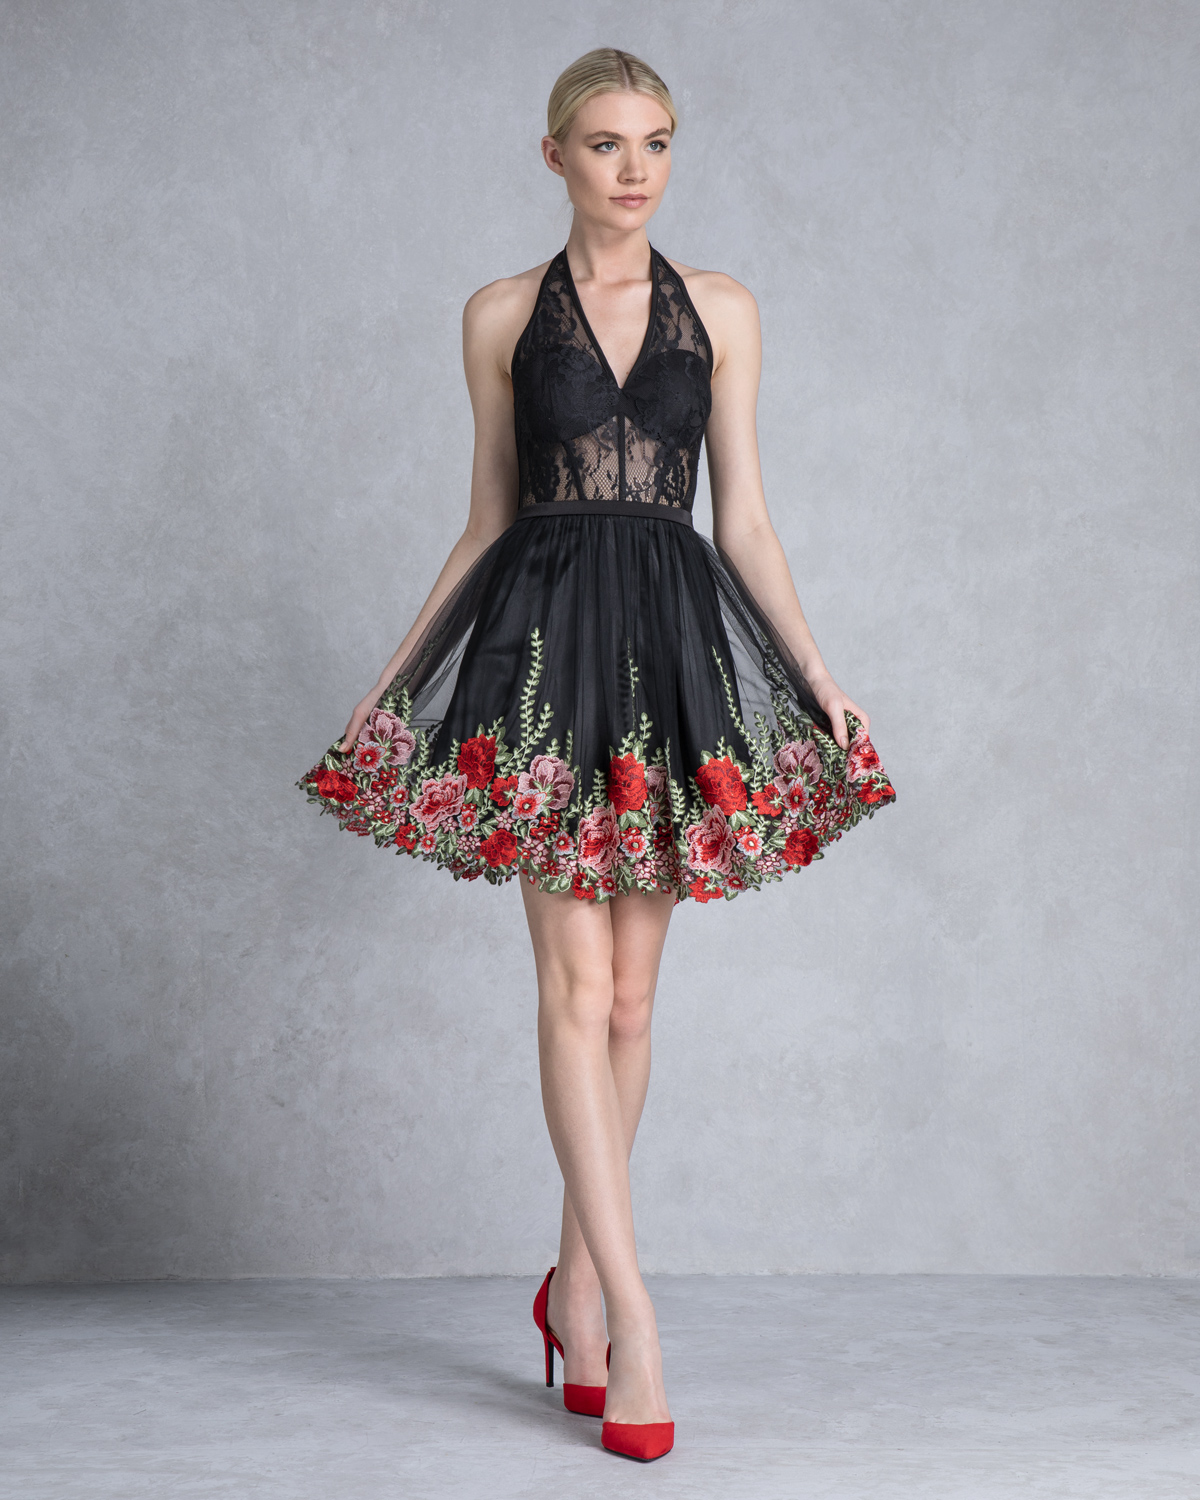 Κοκτέιλ Φορέματα / Φόρεμα κοντό με απλικαρισμένα λουλούδια στο τελείωμα και διάφανο δαντελένιο τοπ